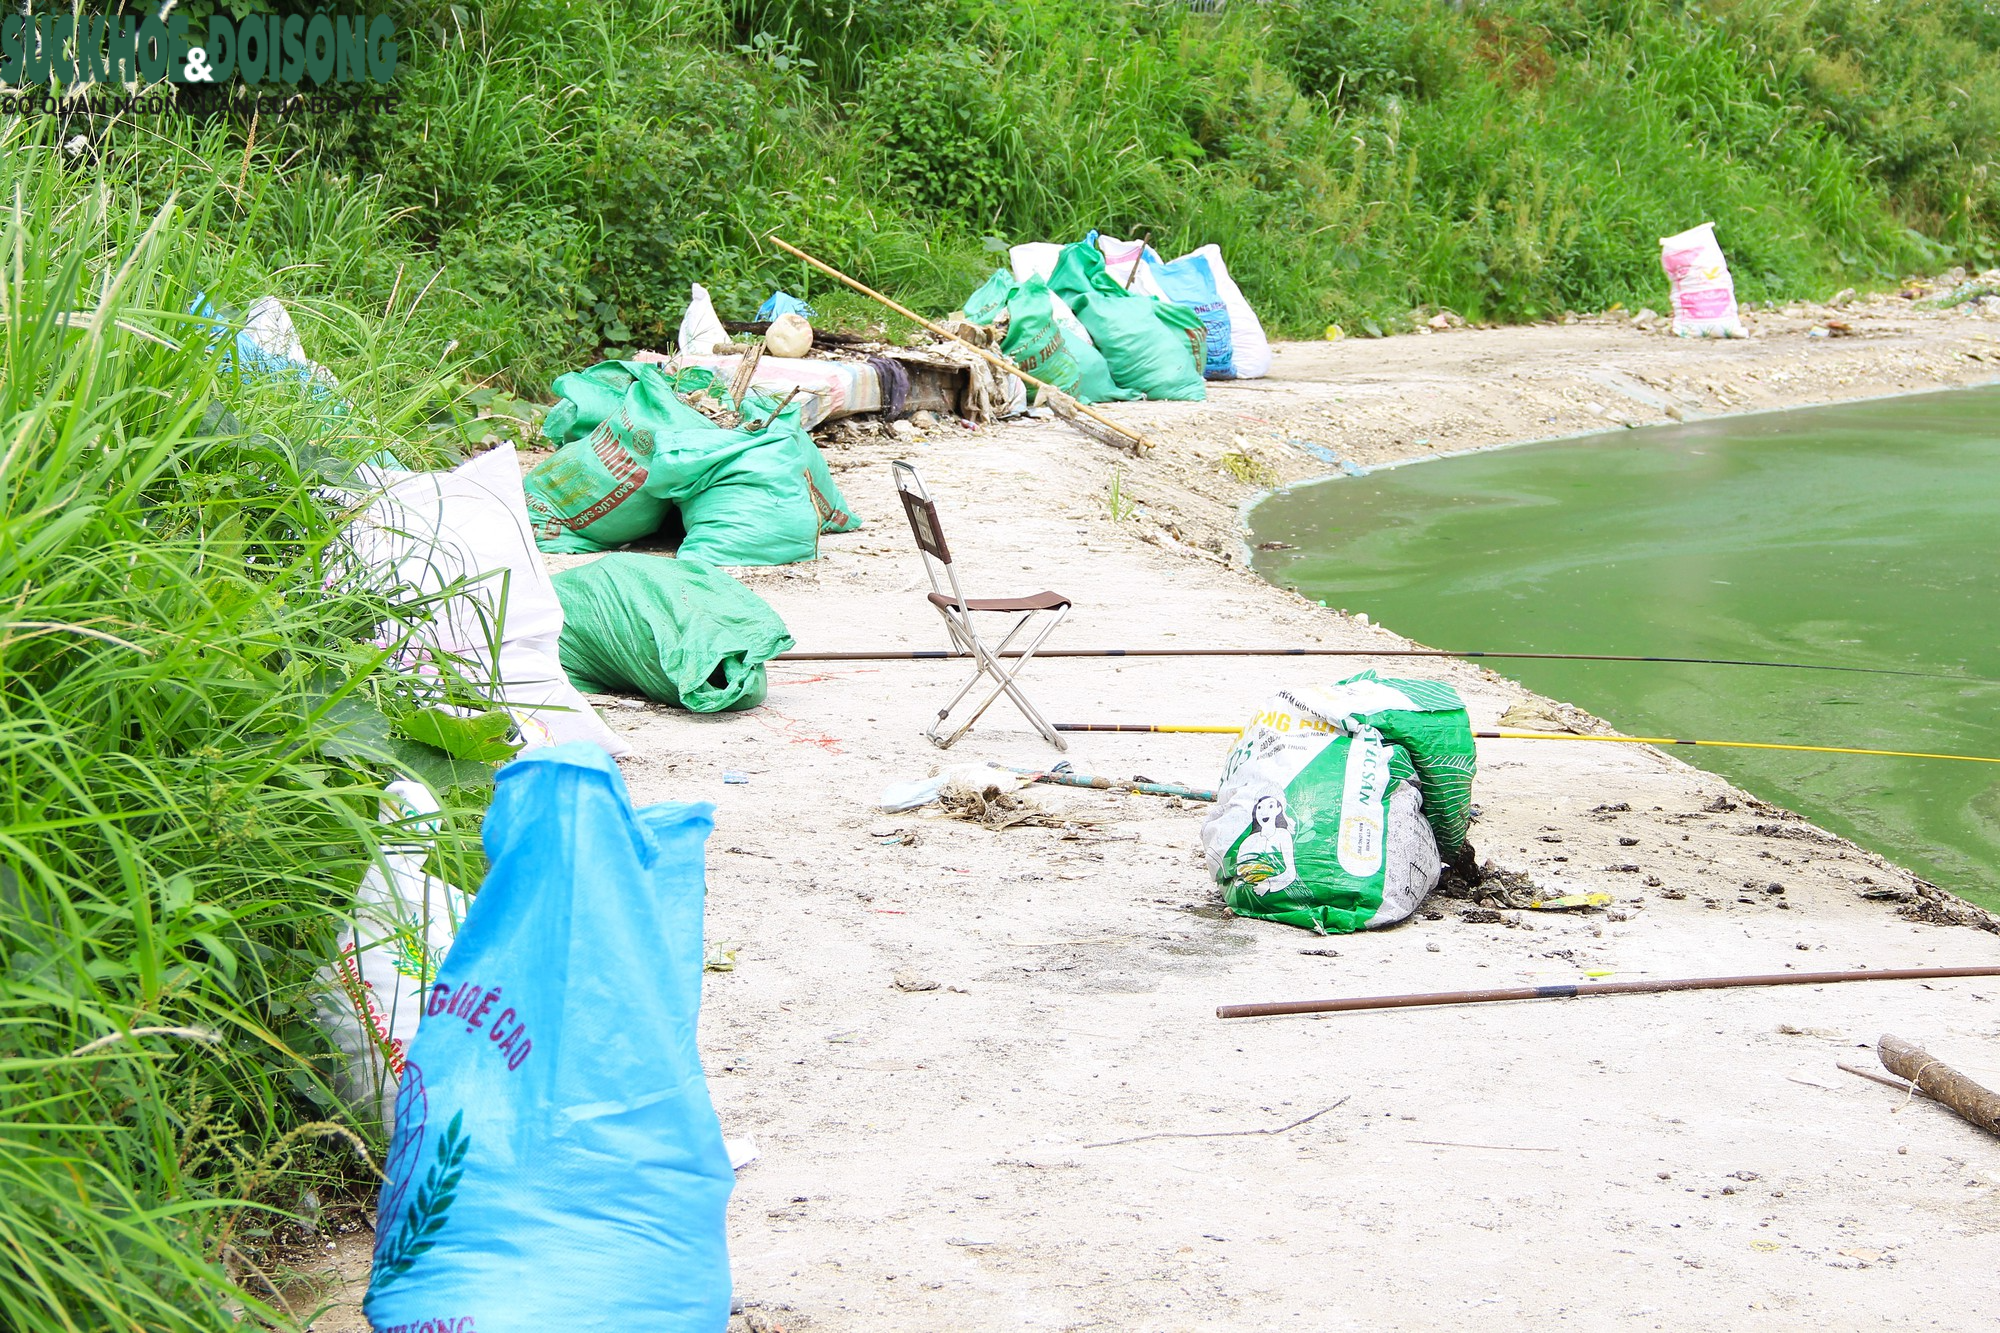 Hồ nước tại trung tâm Hà Nội ô nhiễm, mặt hồ nổi mảng bám, nước bốc mùi - Ảnh 13.